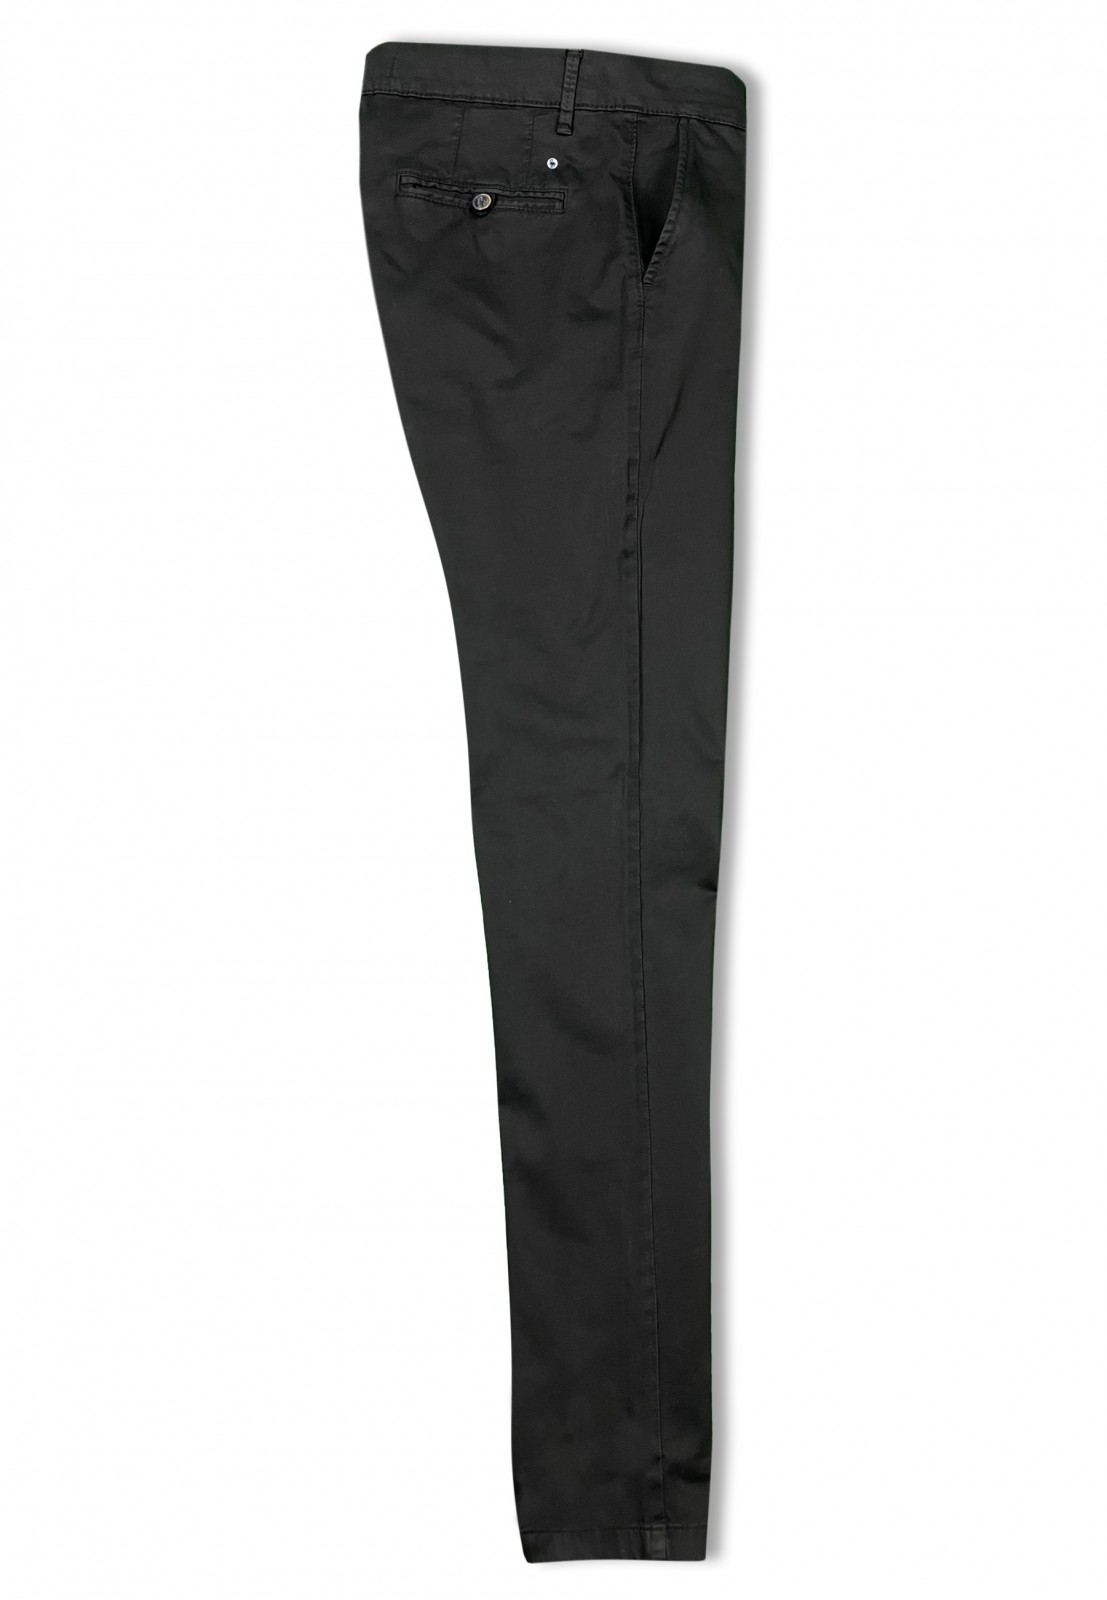 Pantalón chino de hombre Romay Patadegayo en color negro, fabricado en España, muy cómodo y de calidad - completo